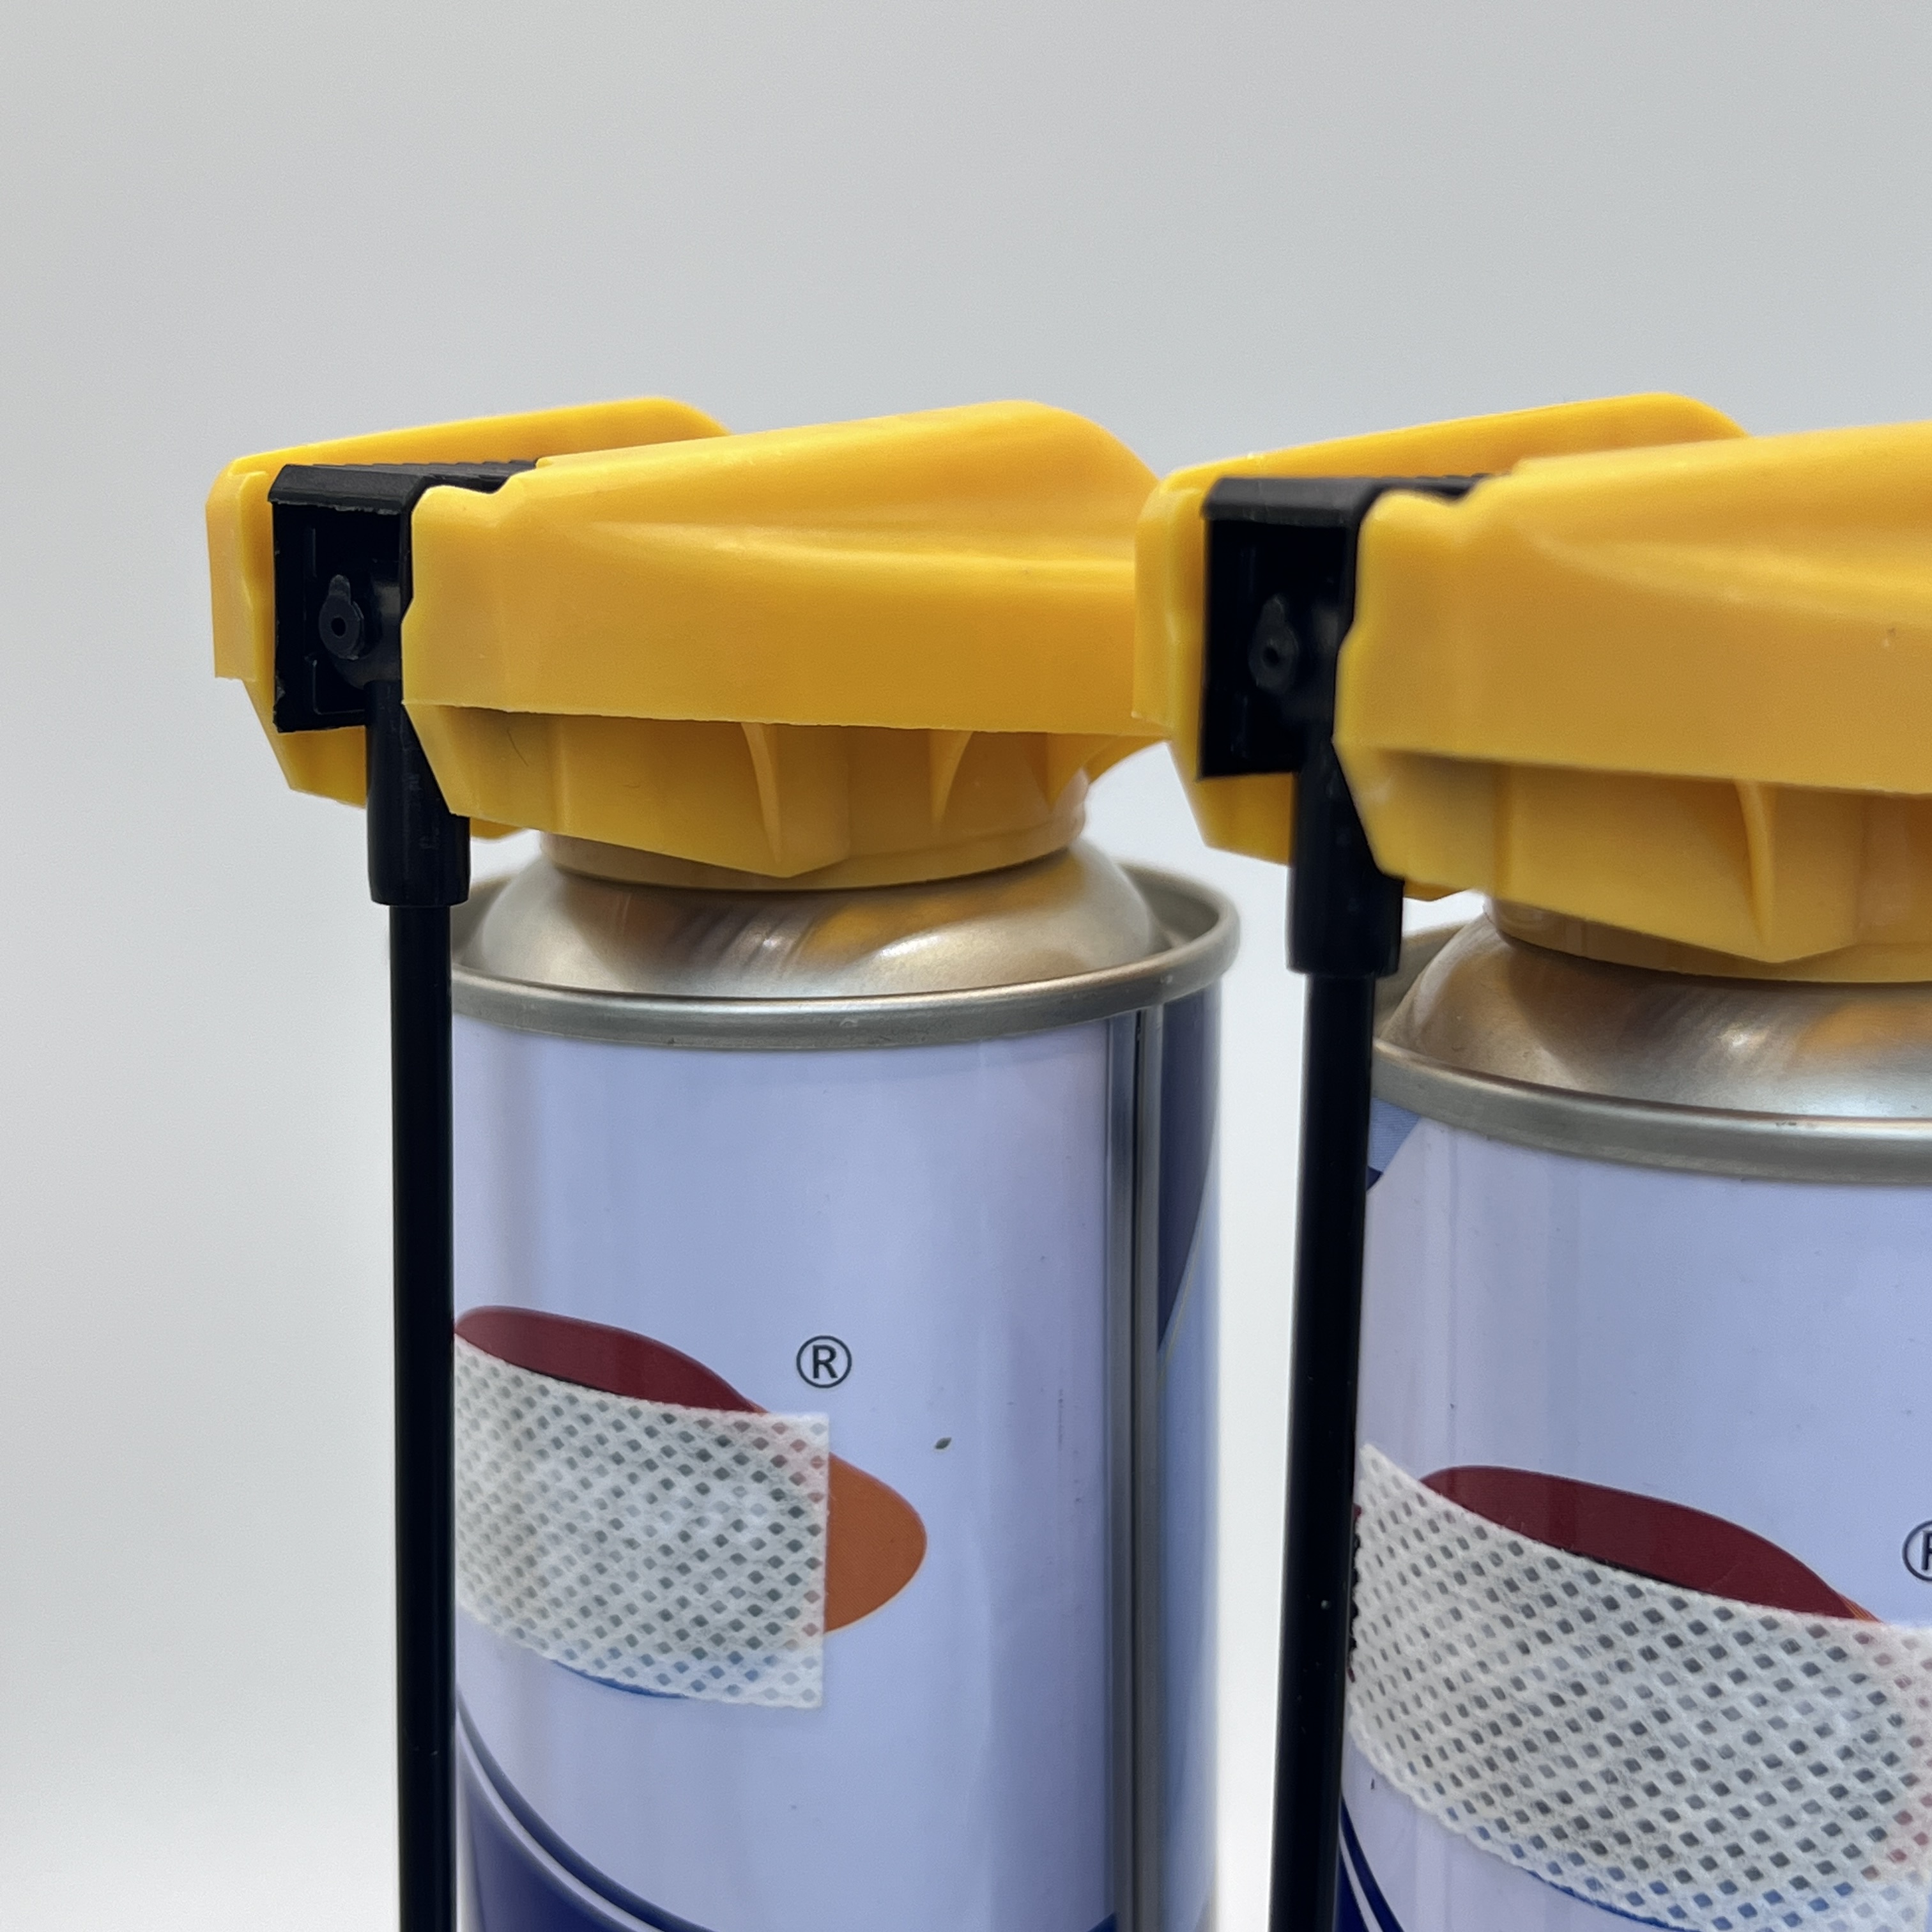 Herramienta de recarga de cartucho de gas butano versátil: solución fácil de recarga para estufas y encendedores portátiles